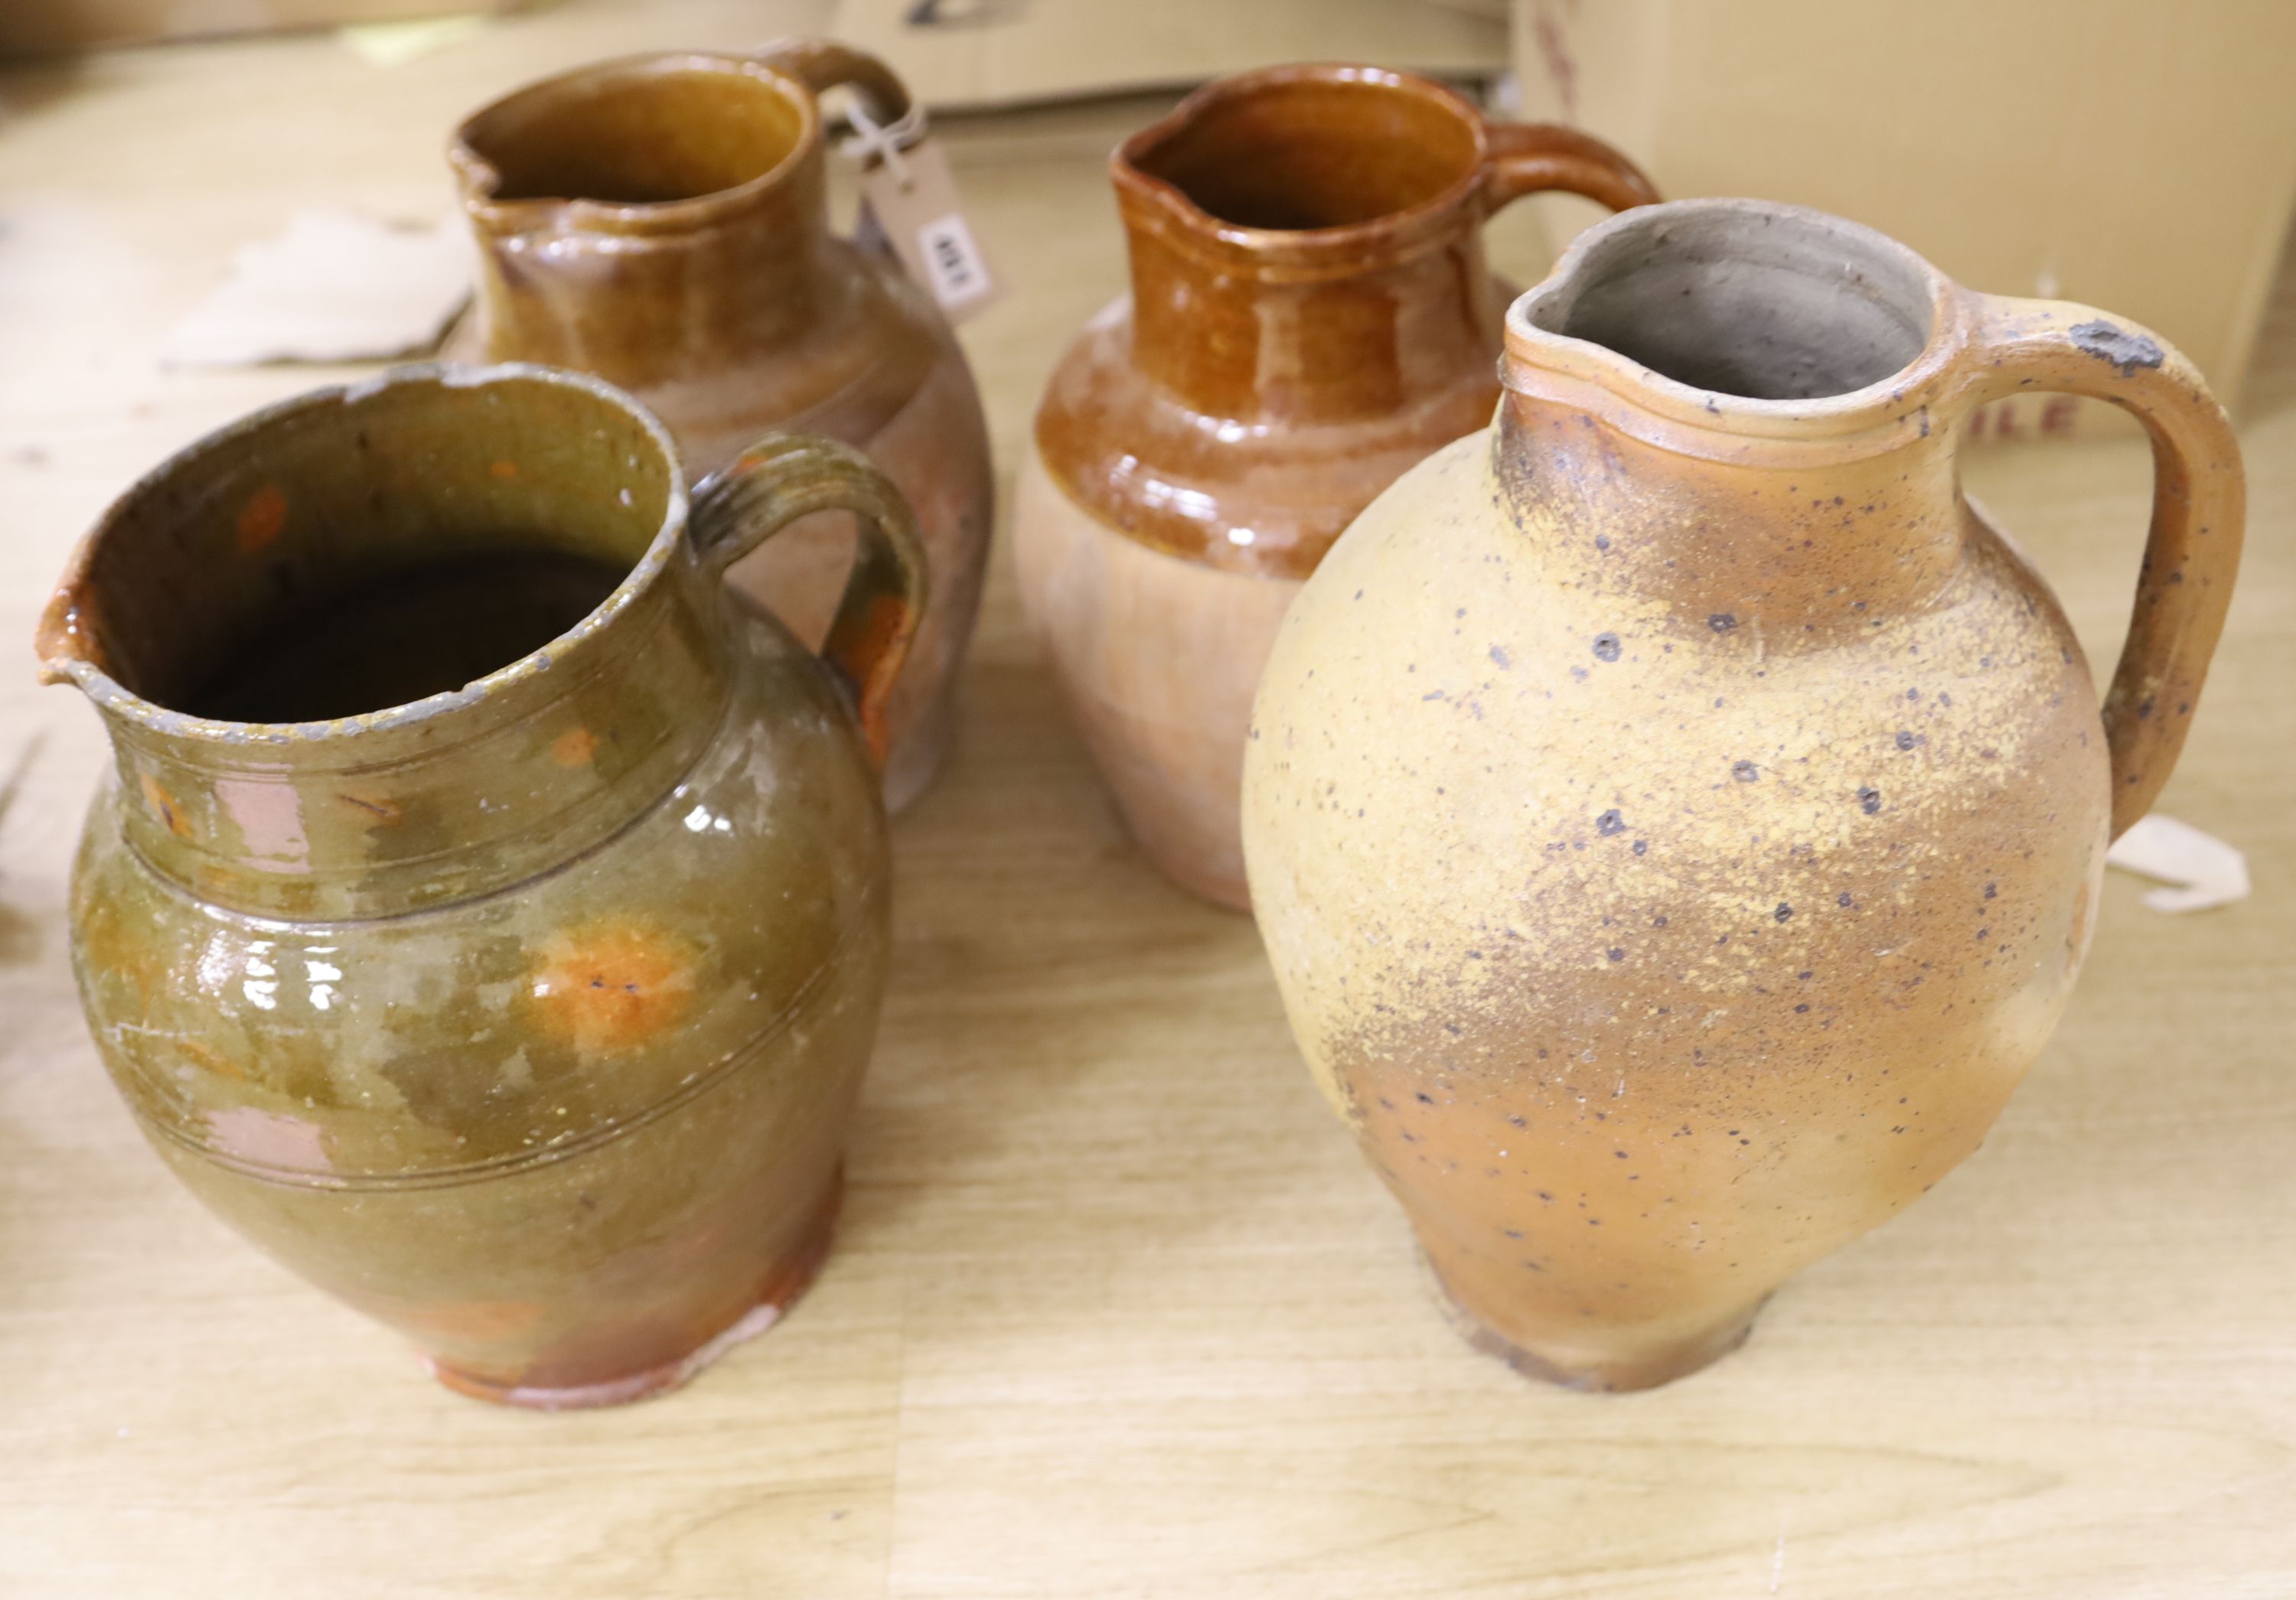 Four Sussex pottery jugs, tallest 34cm